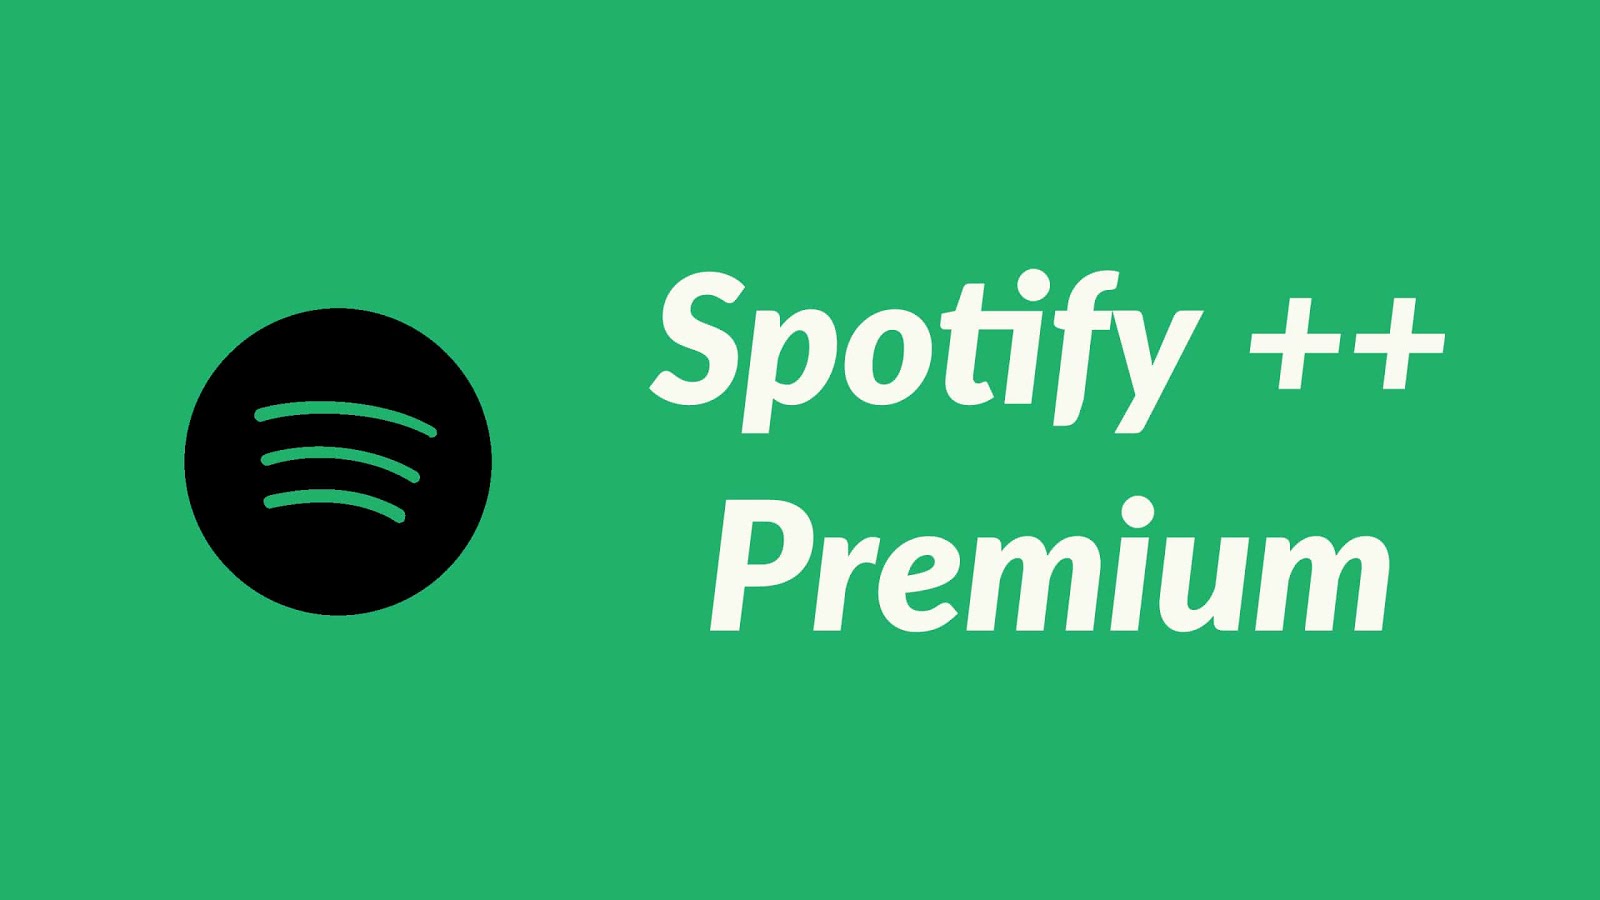 Spotify Premium 8.5.81.991 Cracked versione completa 2020 | ShehrozPC